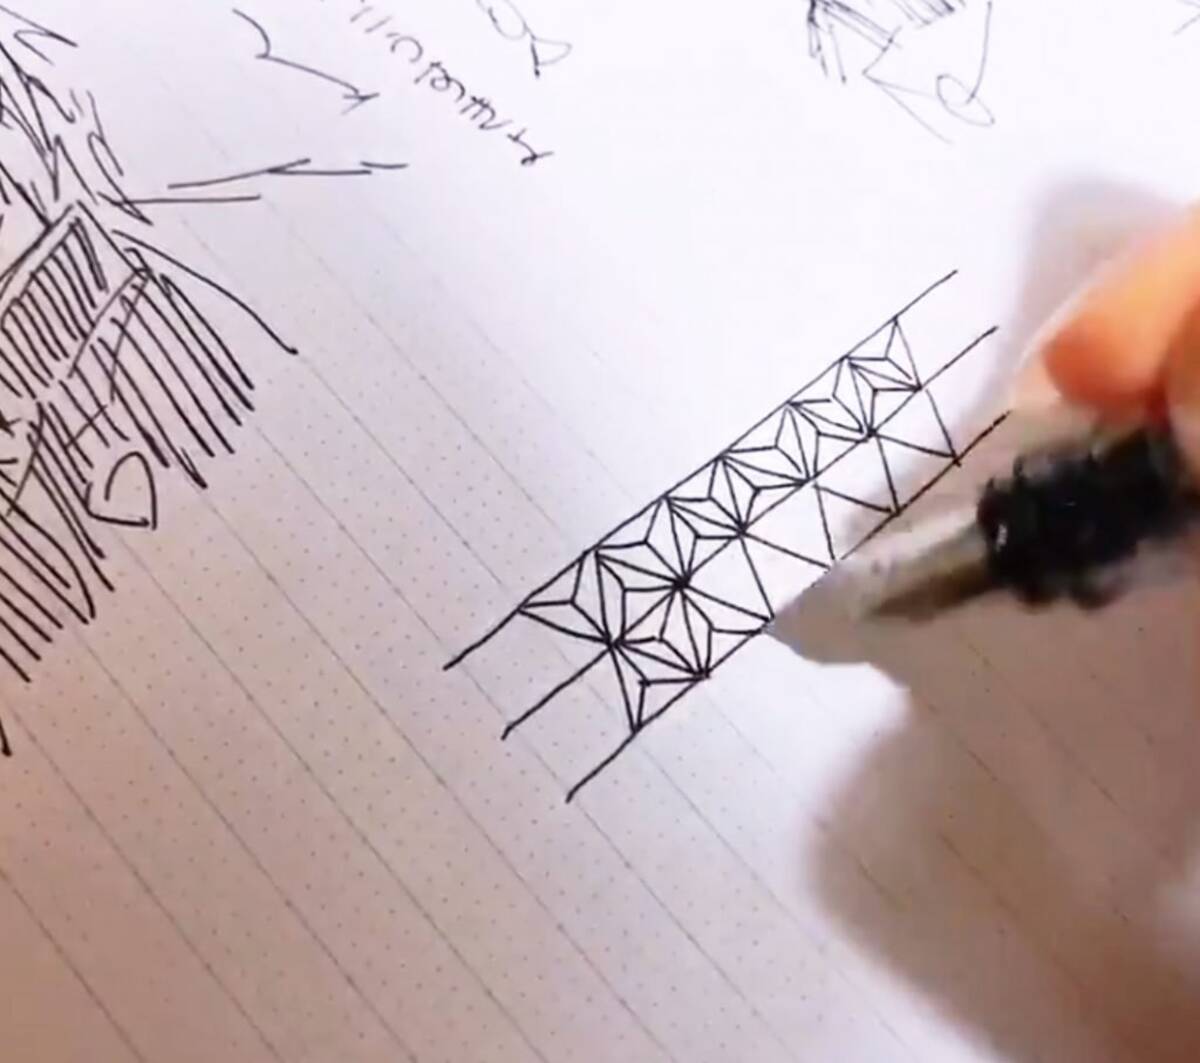 麻の葉紋様の簡単な描き方 動画ツイートに こんな描き方があったとは 物凄く綺麗 感動の声多数 2019年8月22日 エキサイトニュース